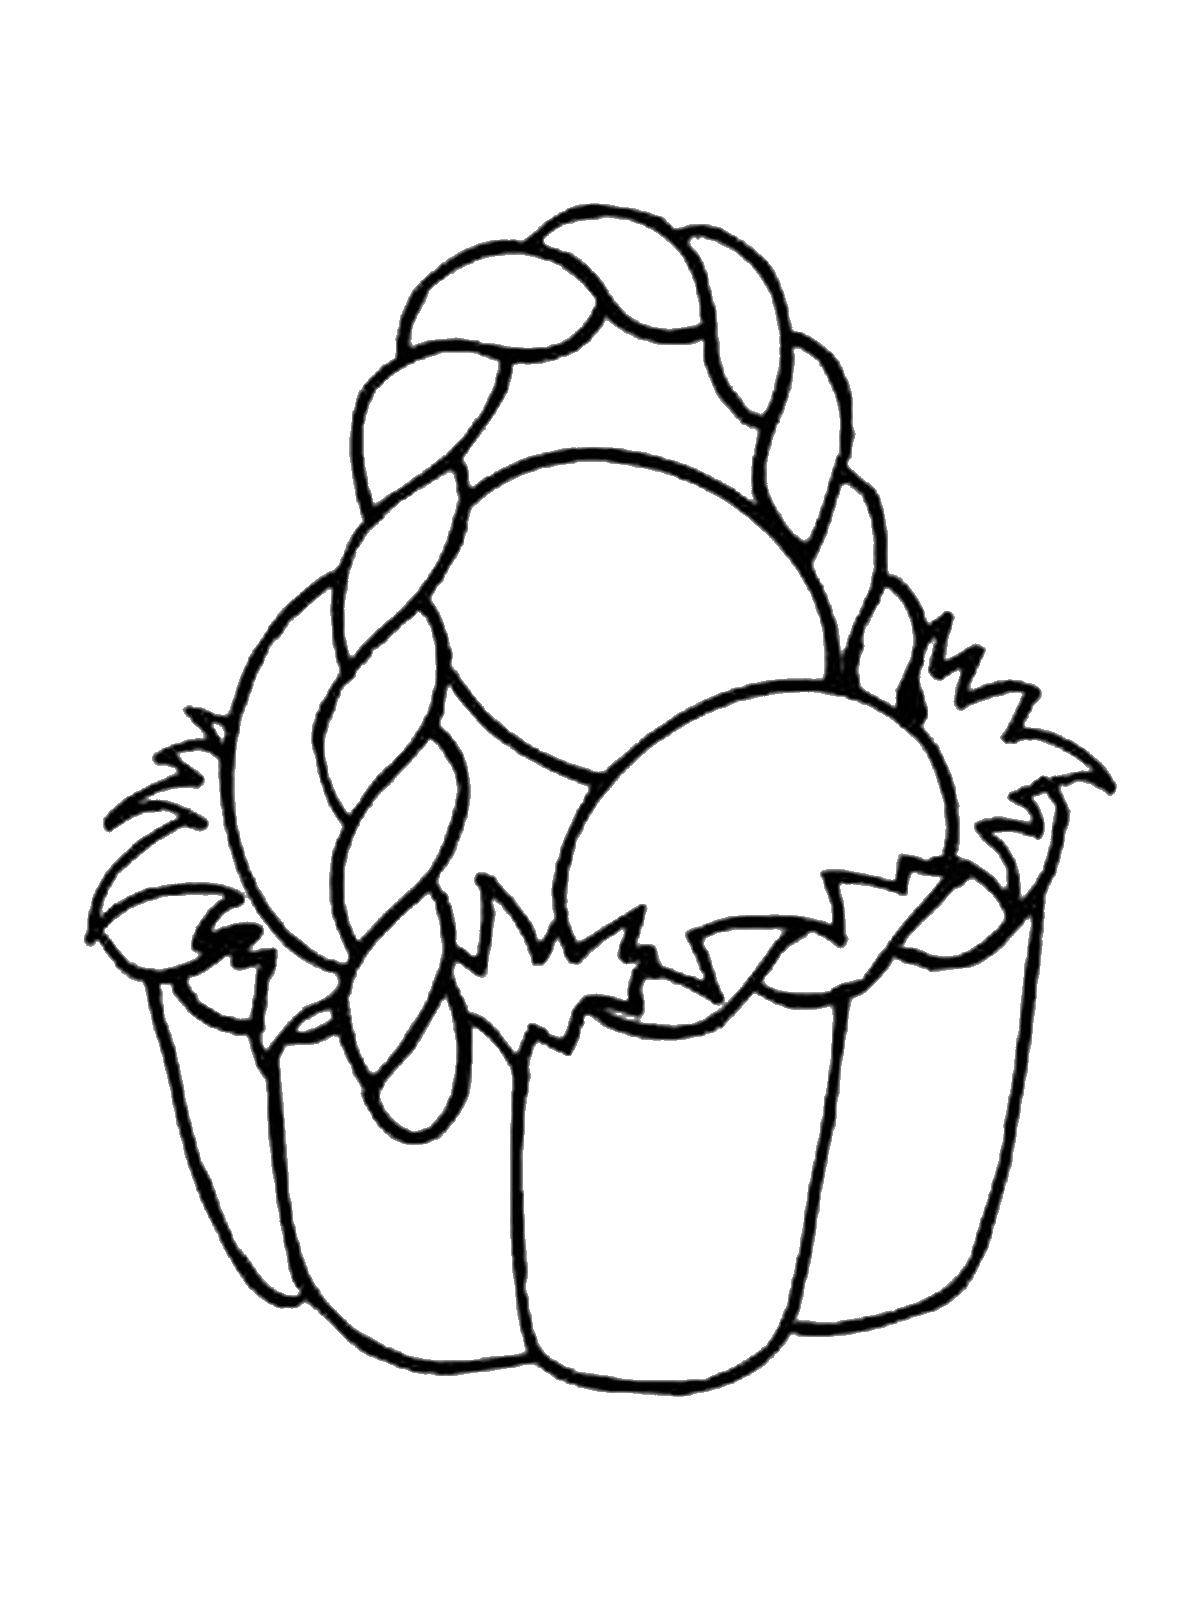 Название: Раскраска Плетеная корзинка с яйцами. Категория: раскраски пасха. Теги: Пасха, яйца, узоры.